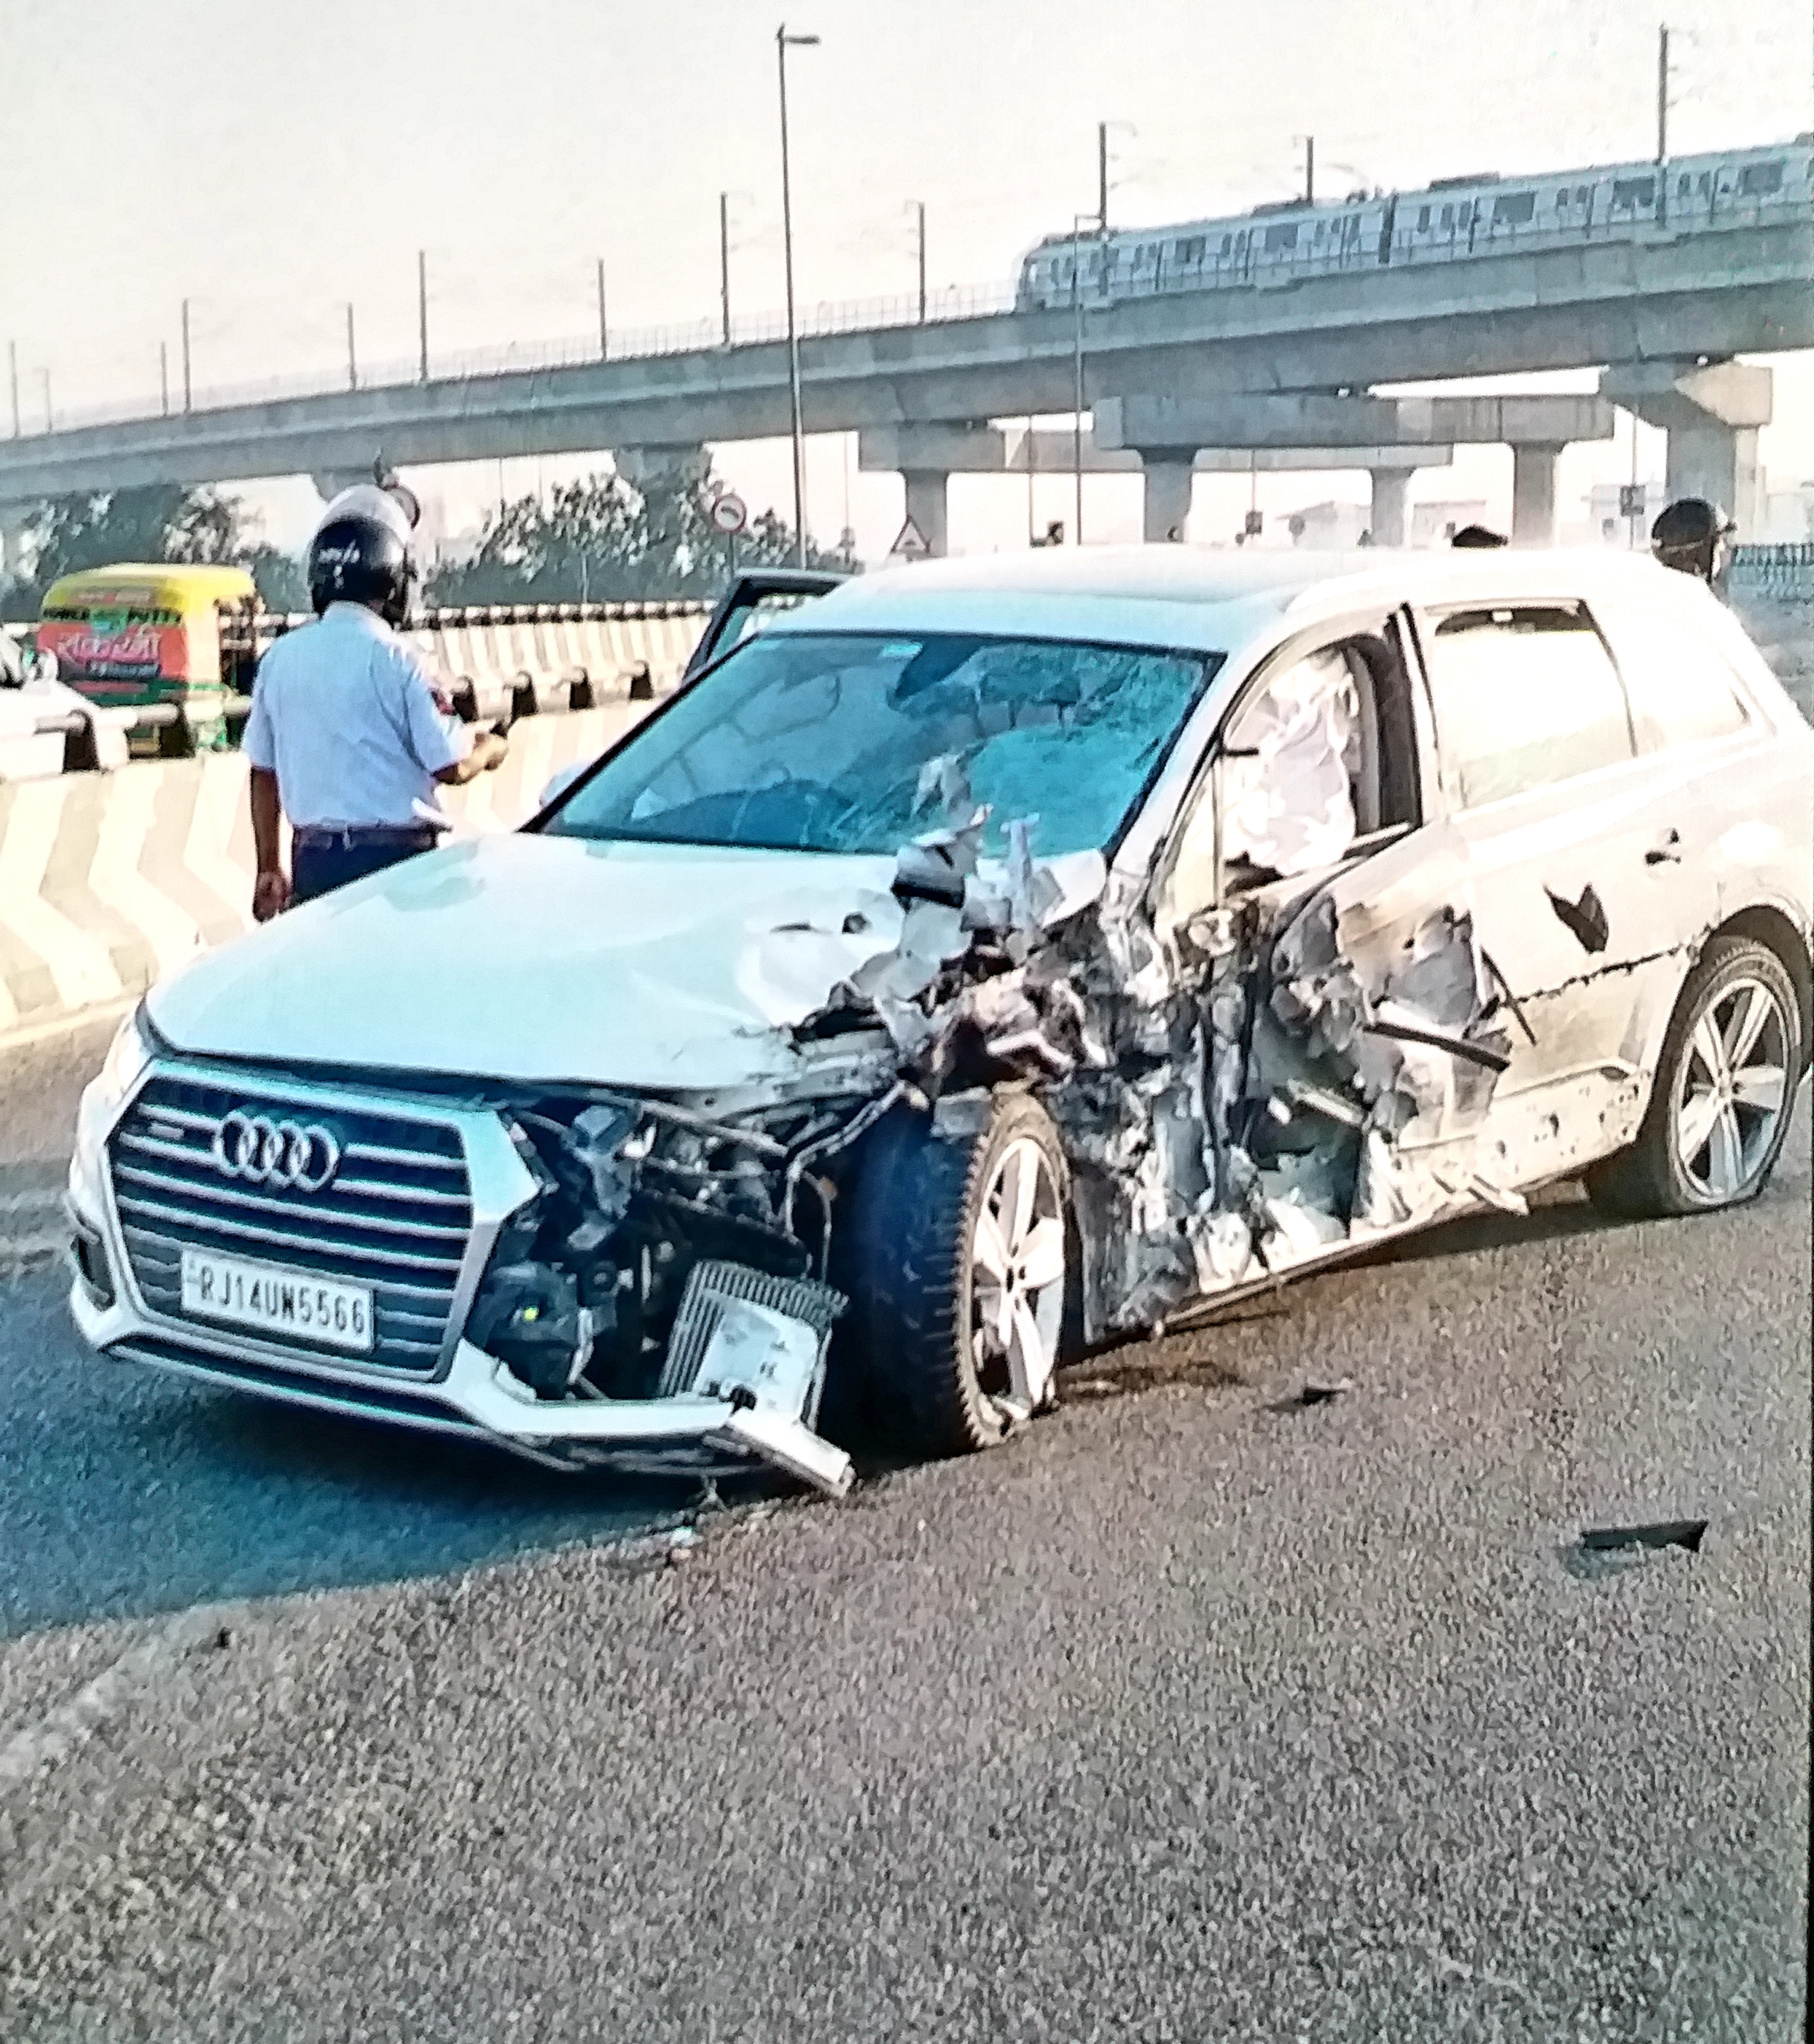 Jaipur elevated road accident, Jaipur latest news